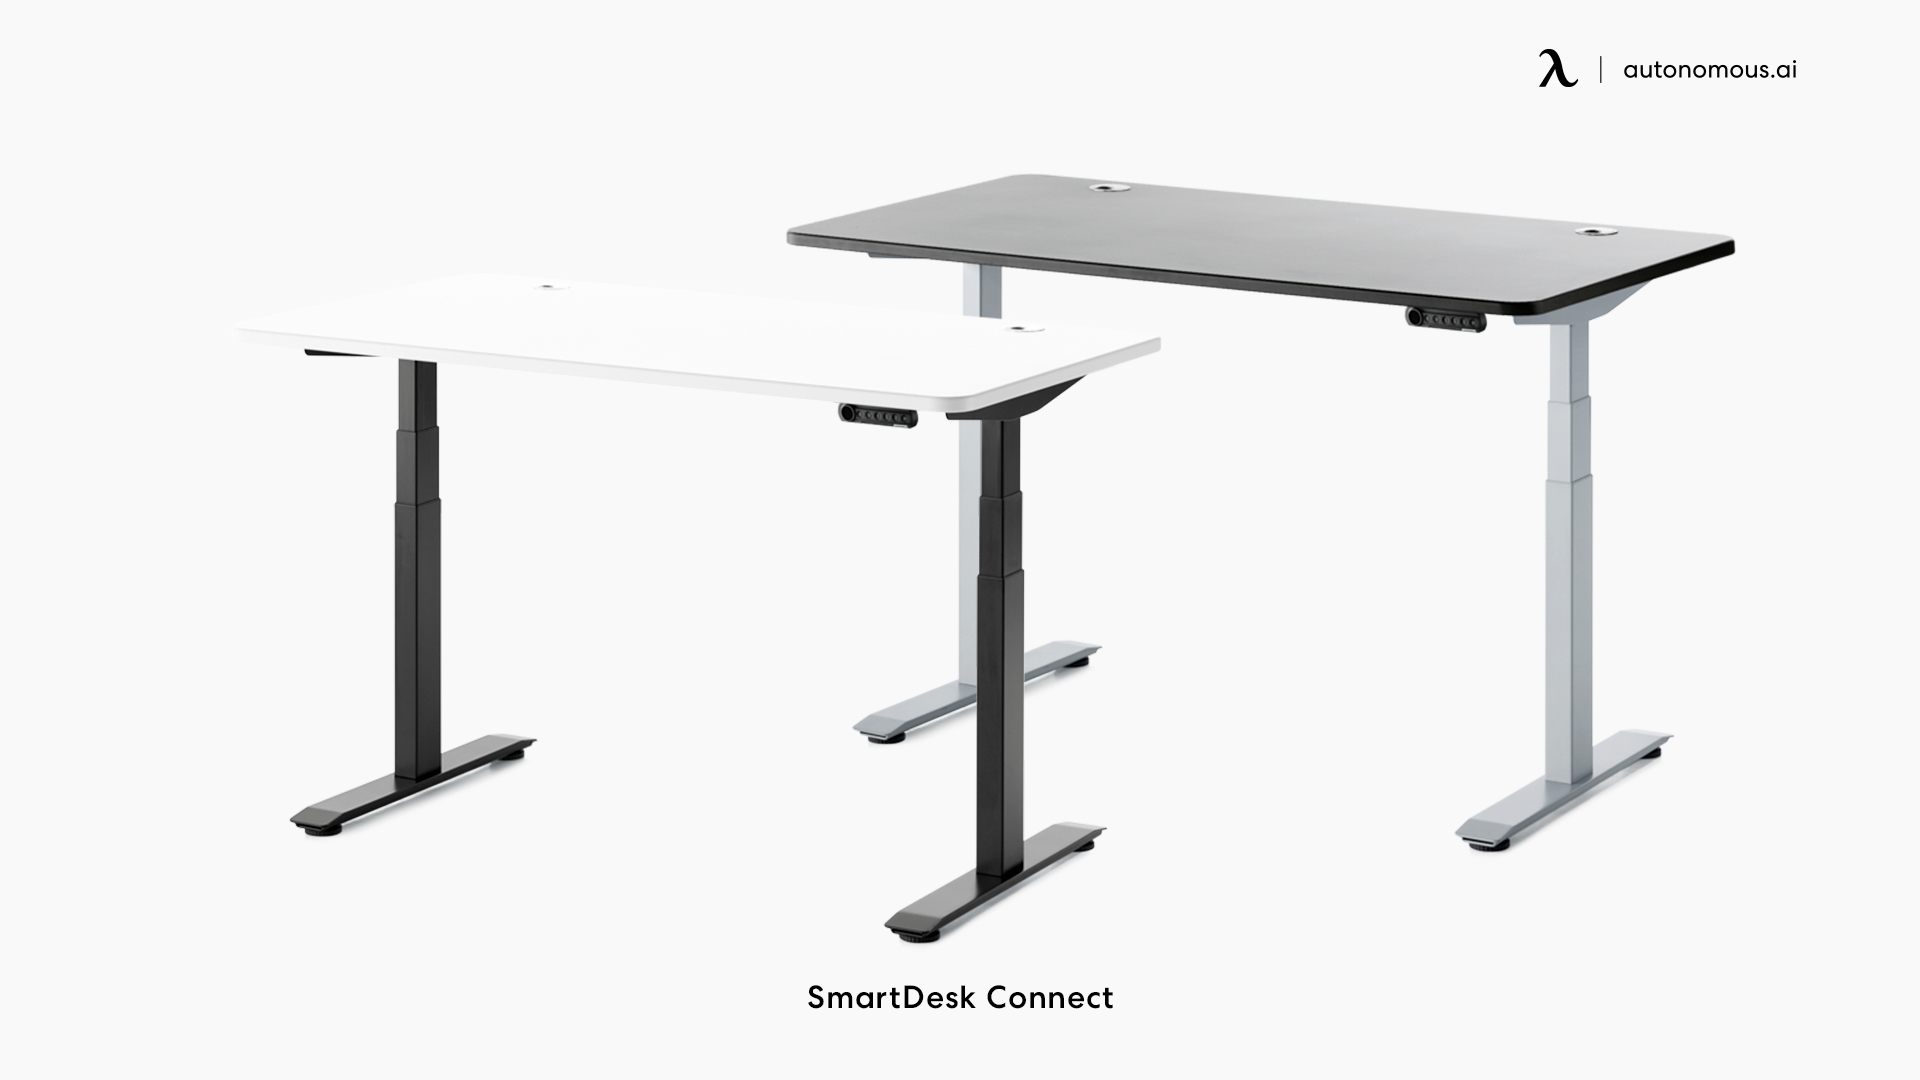 SmartDesk Connect by Autonomous working desk